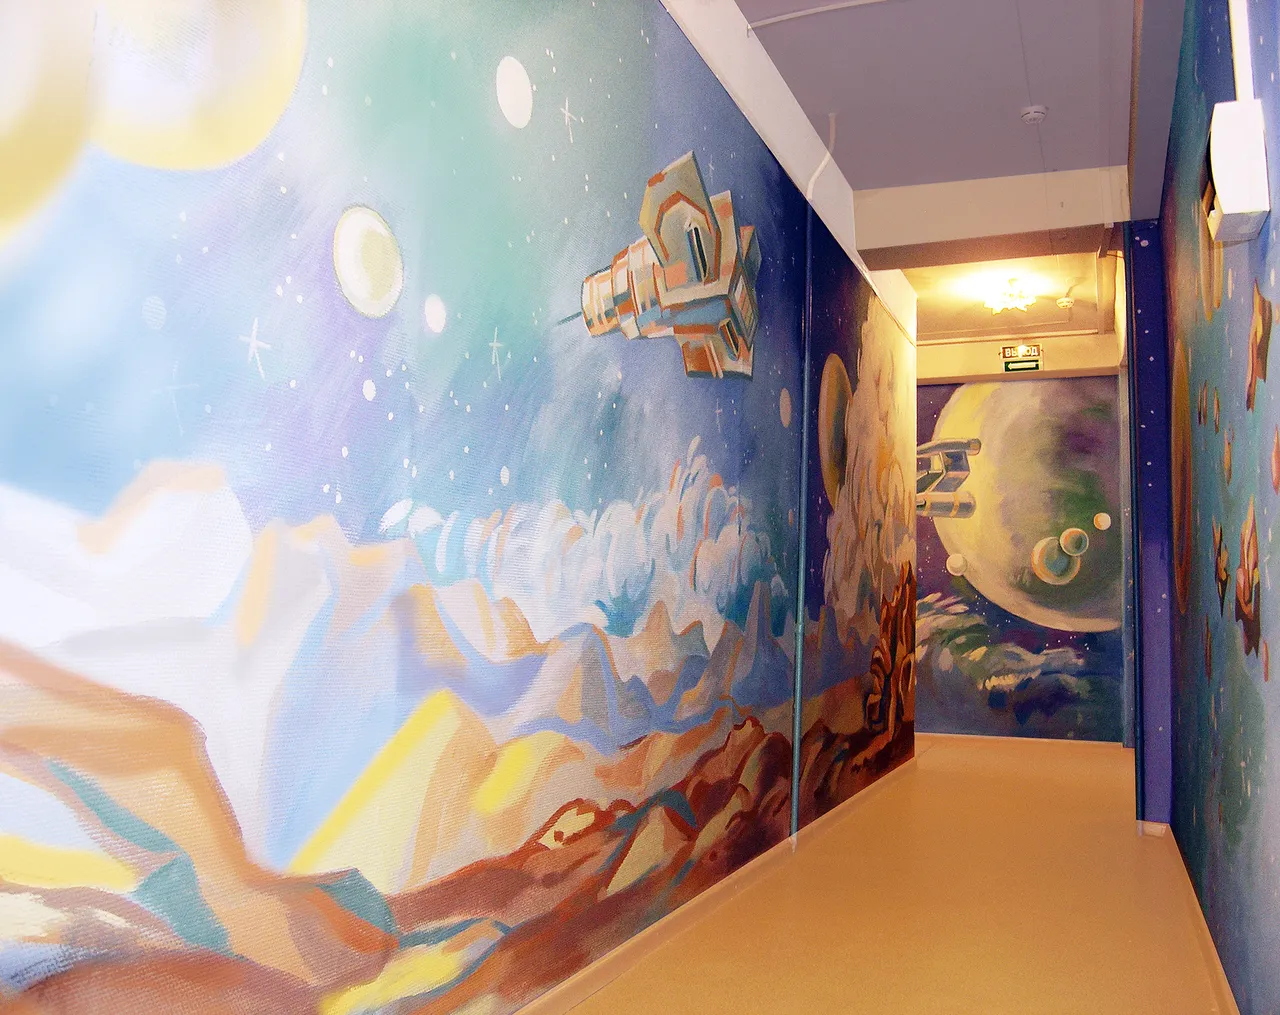 Tranh vẽ tường chủ thể du hành không khí chan chứa ấn tượng